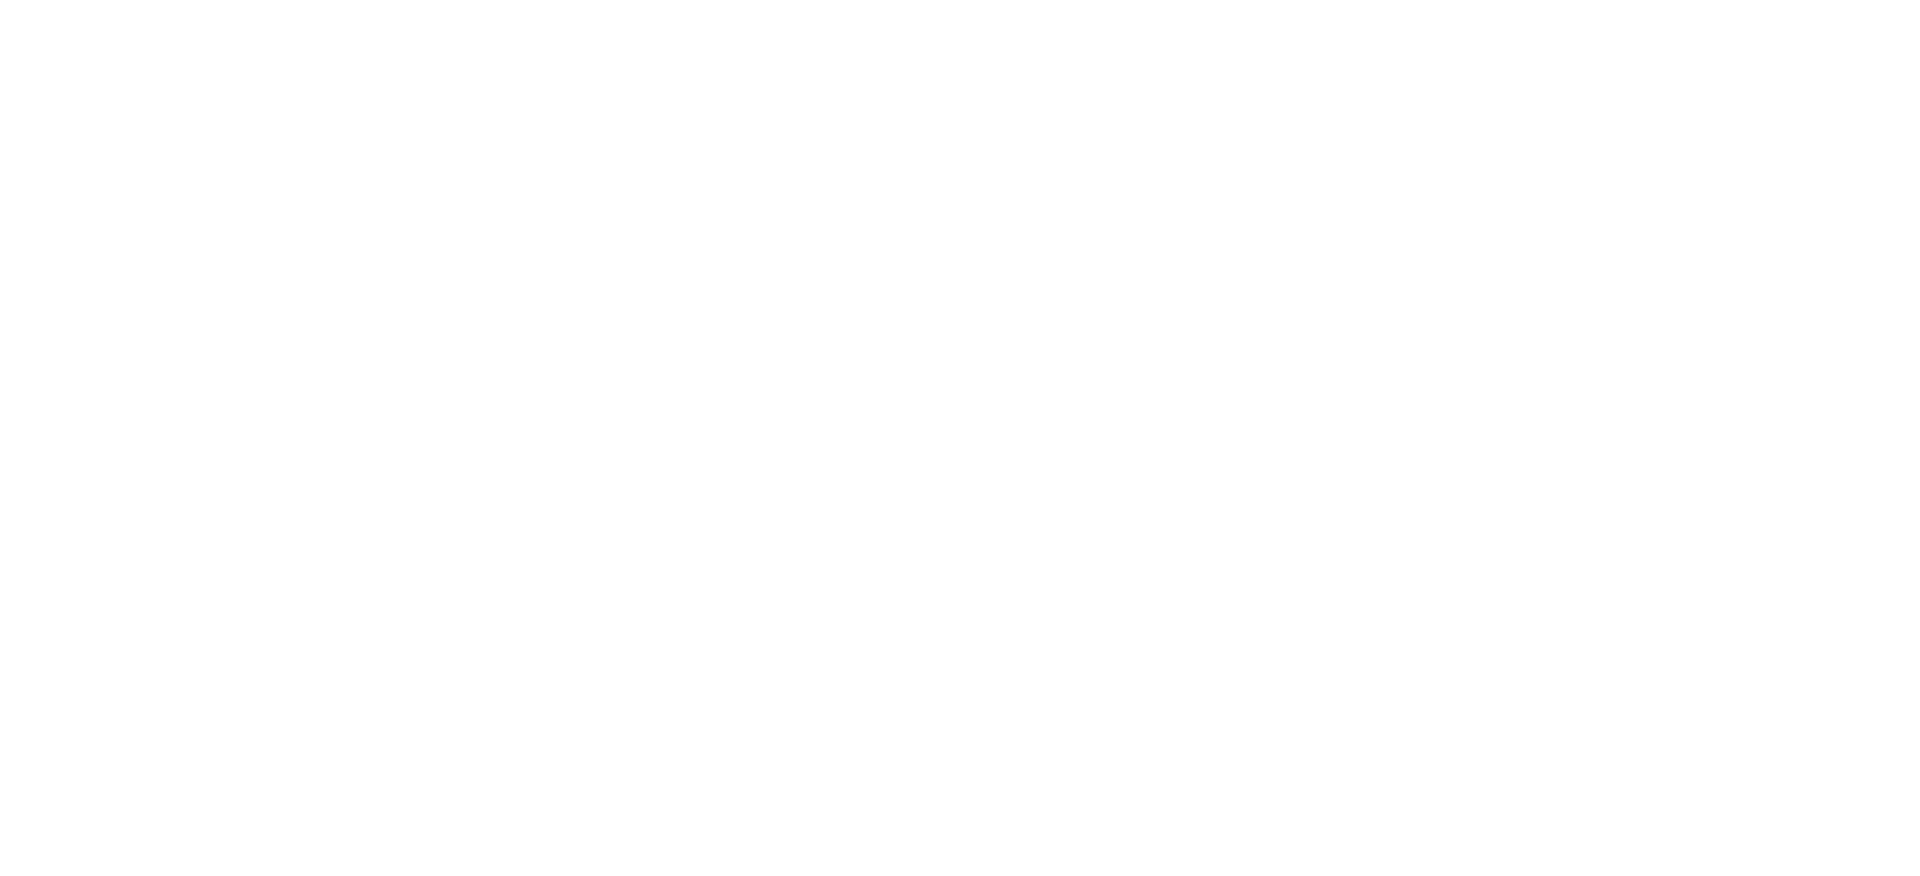 dierks bentleys whiskey row 1